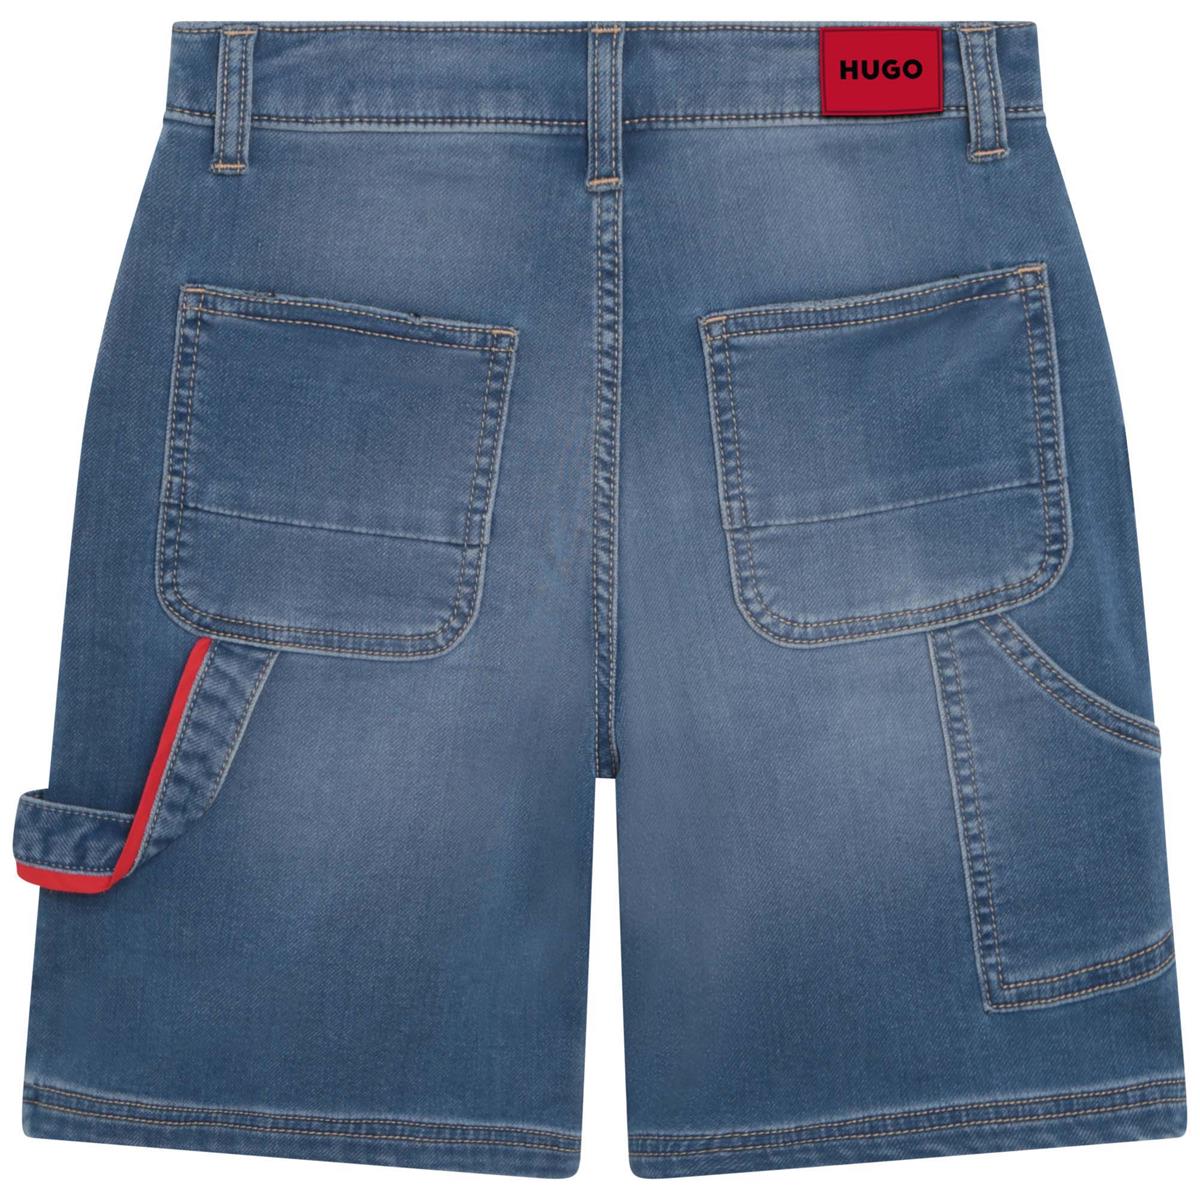 Boys Blue Denim Shorts